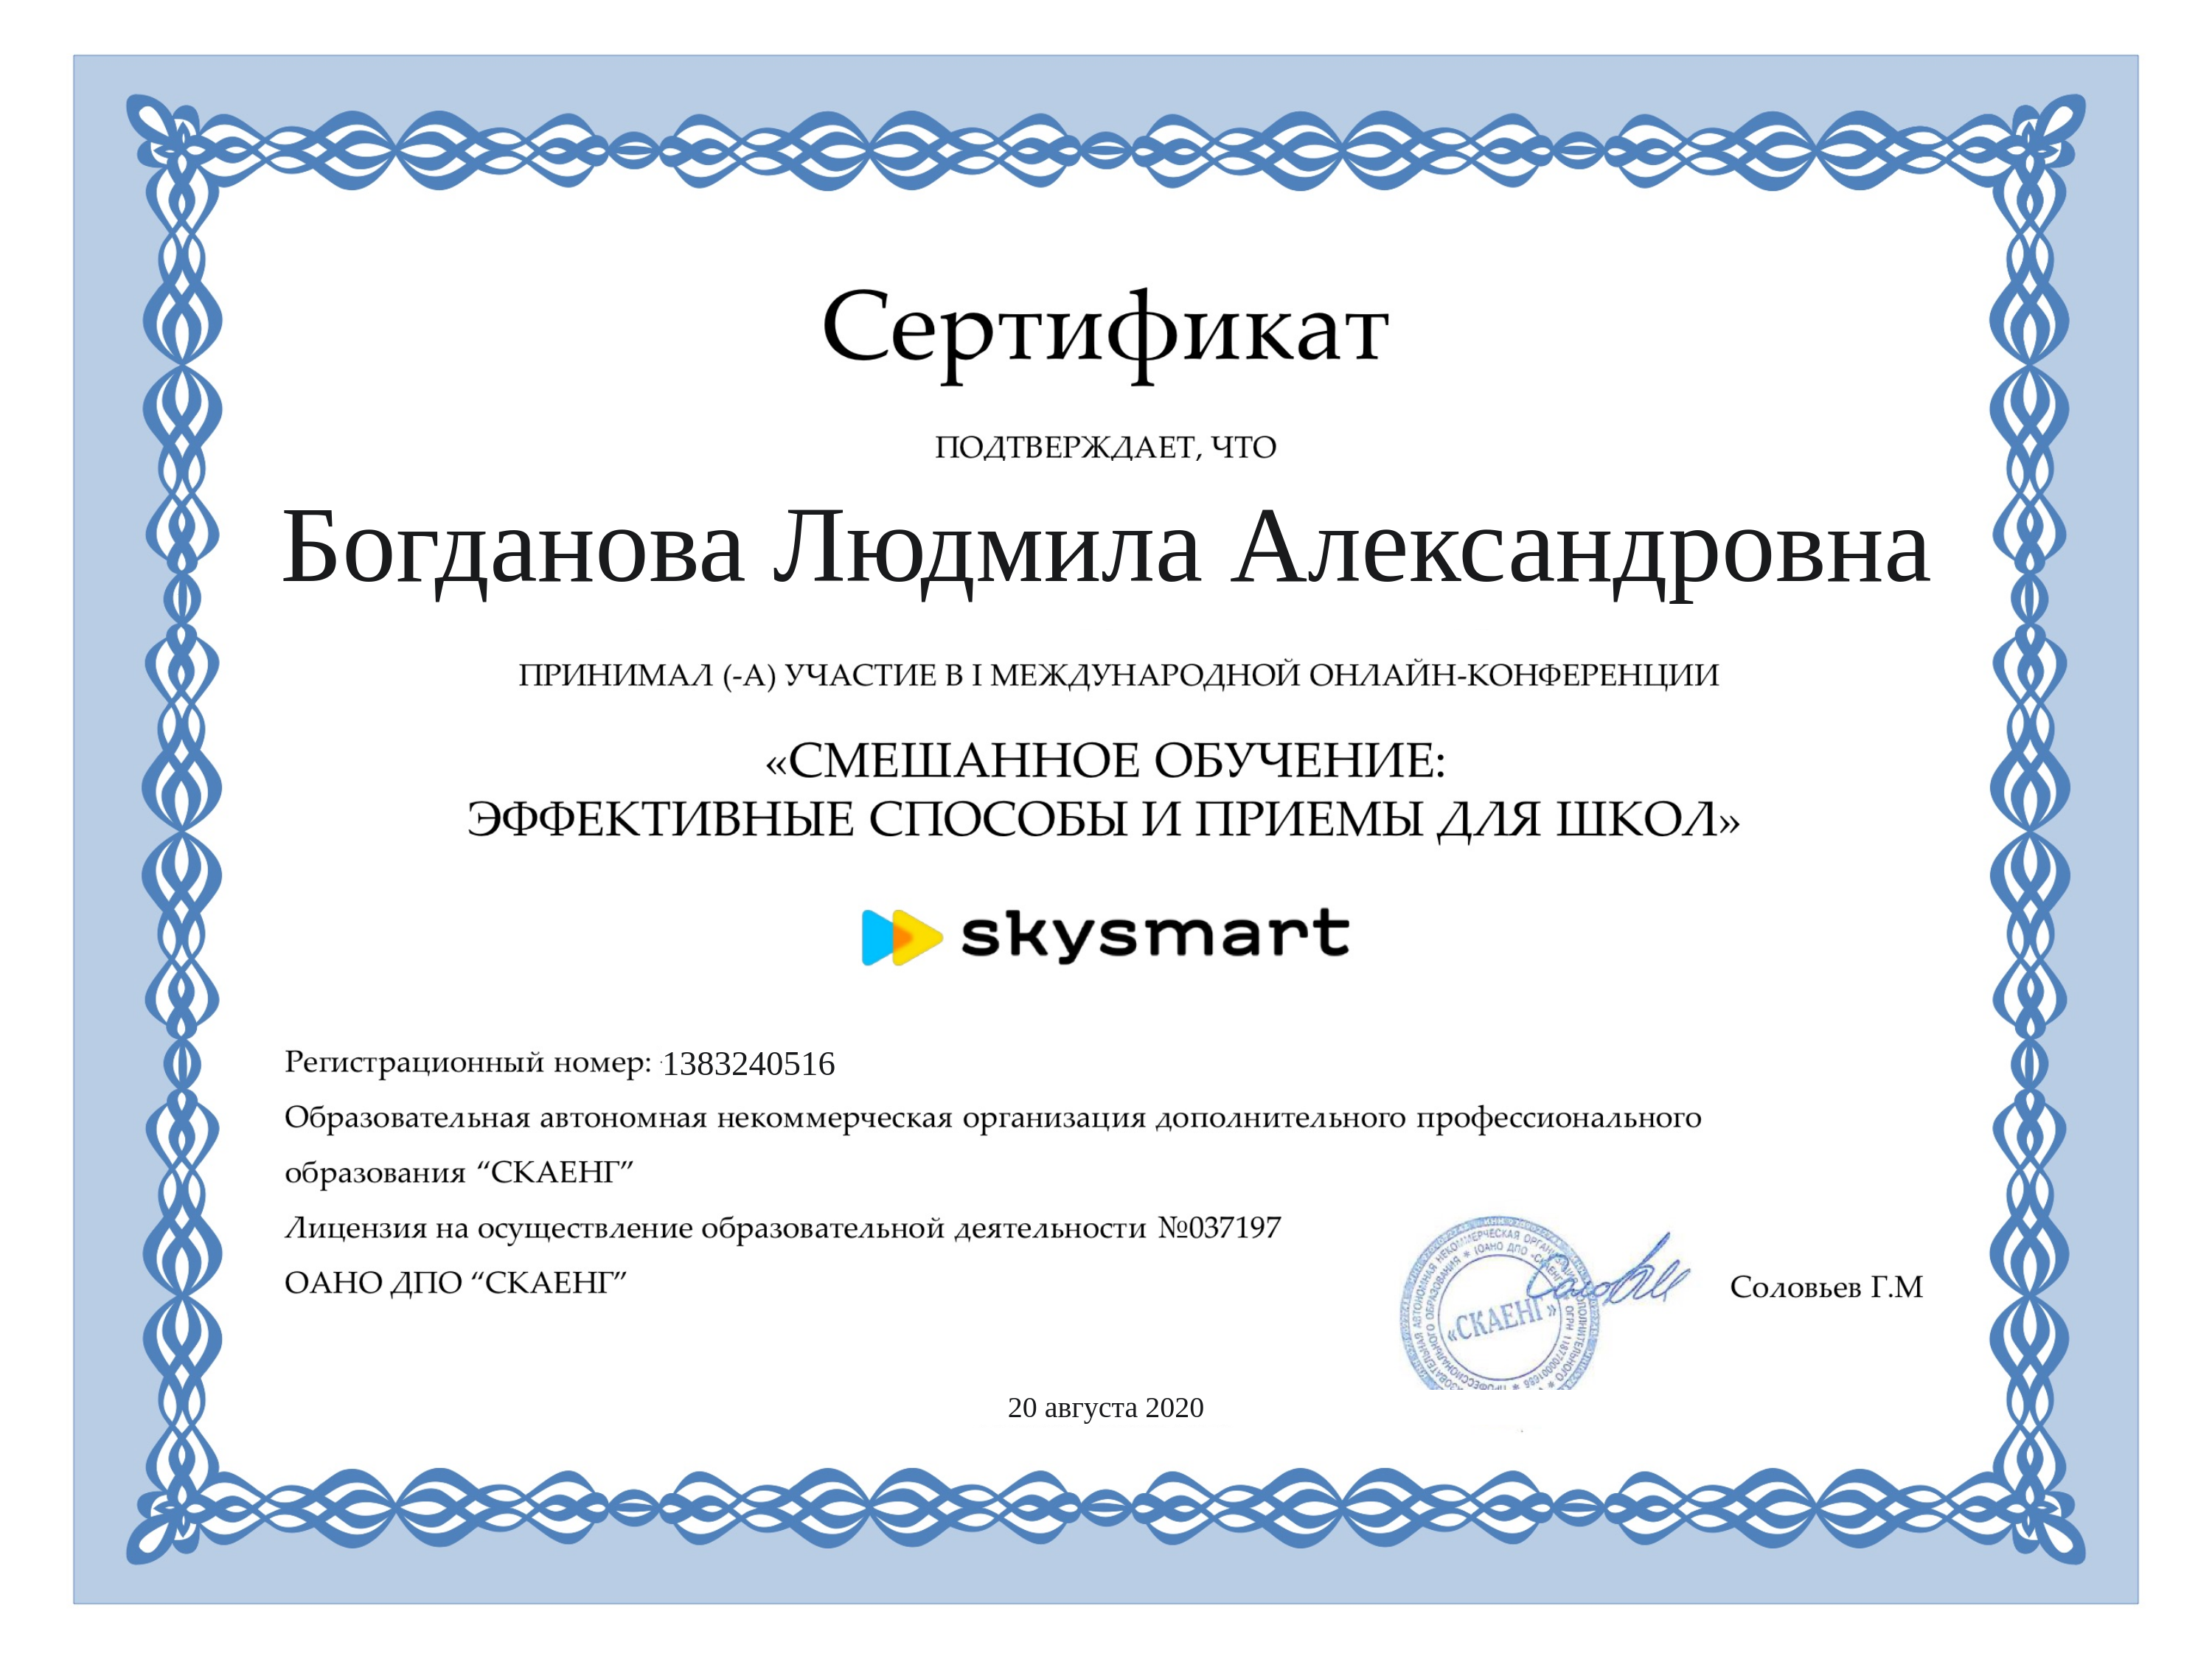 сертификат 2020 скайенг